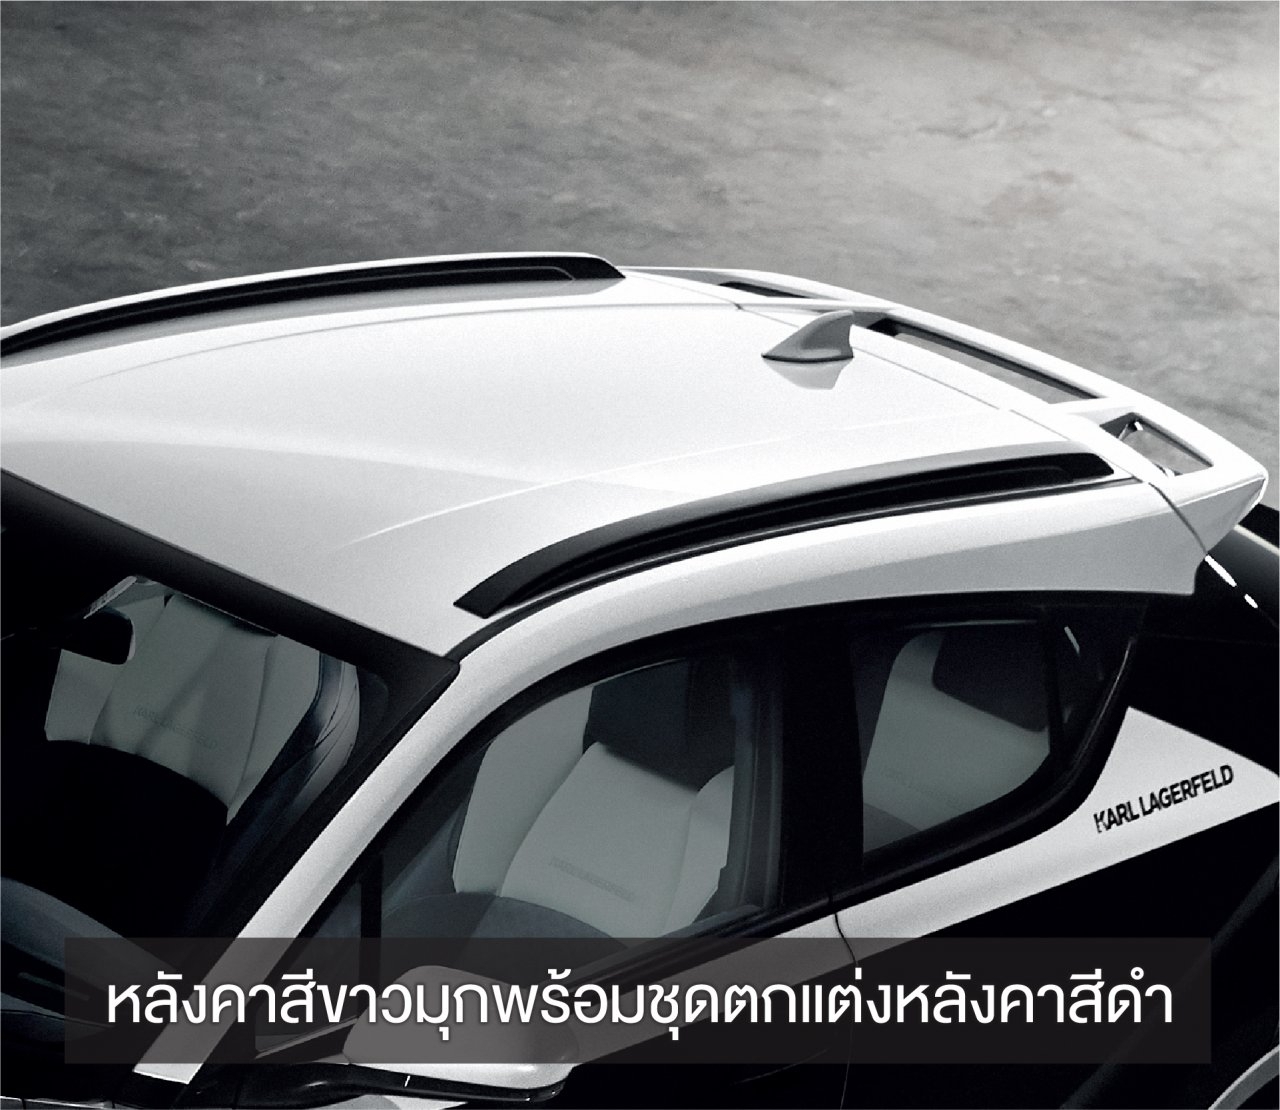 Toyota C-HR BY KARL LAGERFELD ความงดงามที่ผนึกกำลังกับดีไซเนอร์แฟชั่นระดับโลก